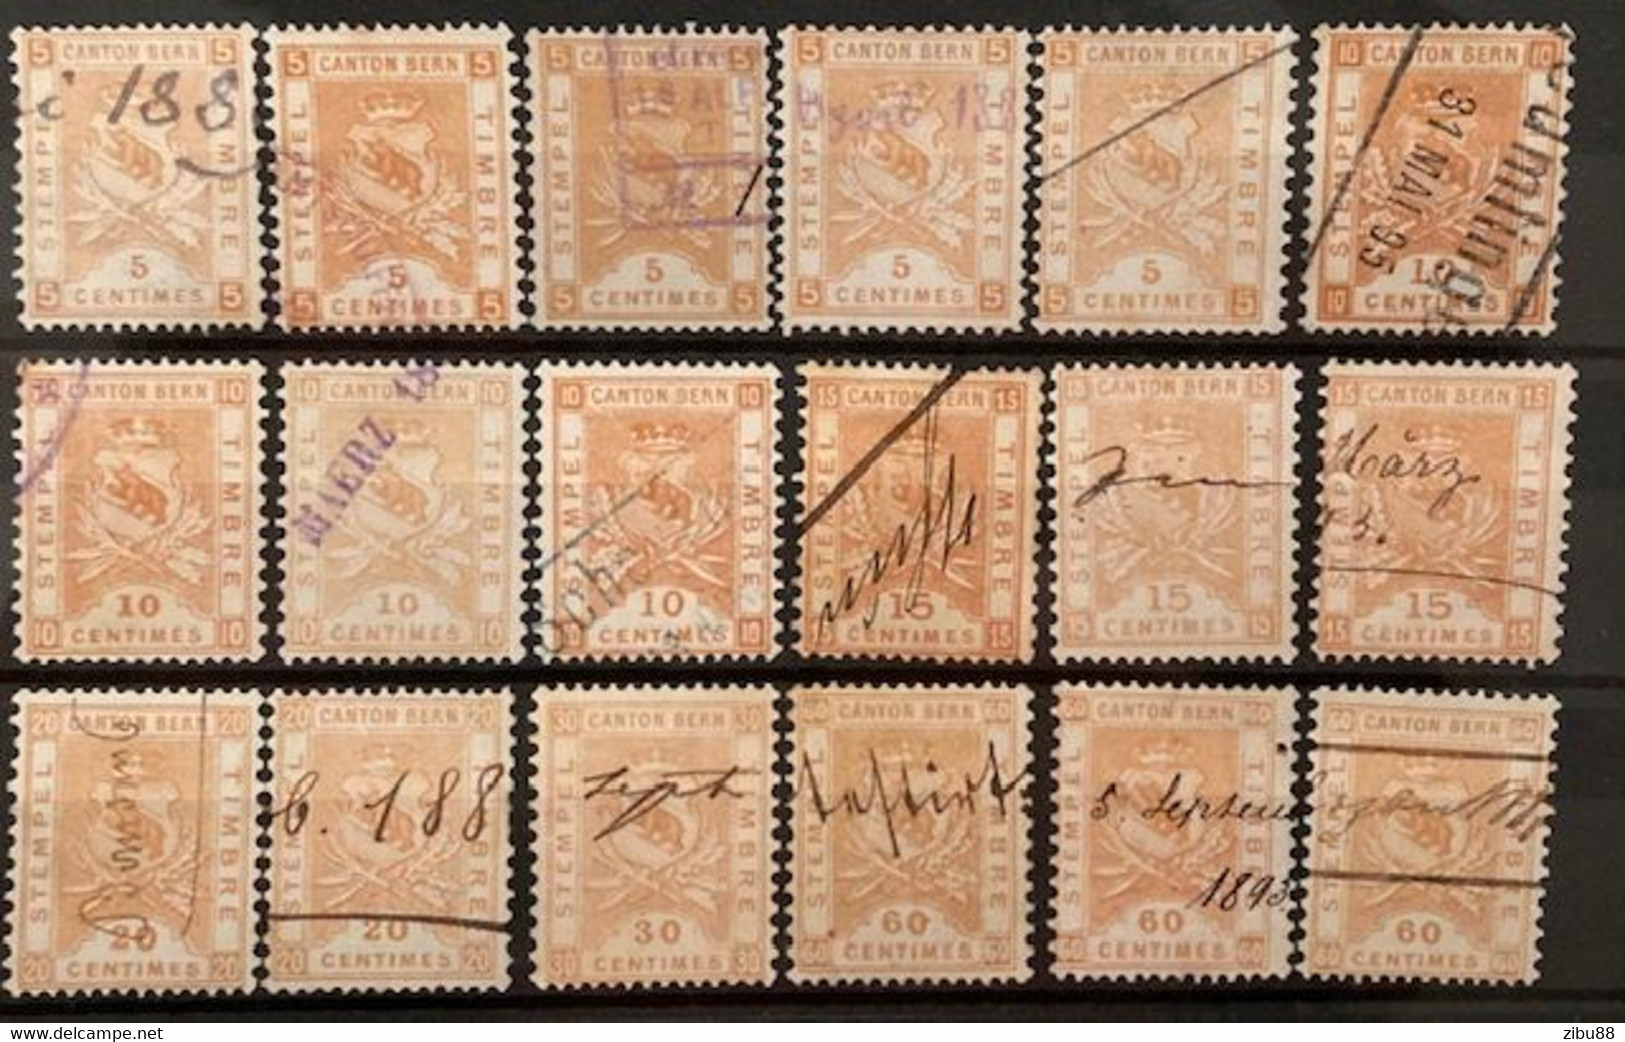 Fiskalmarken / Revenue Stamp Switzerland - Kanton Bern Steckkarte Stempelmarken, Verschiedene Werte - Revenue Stamps